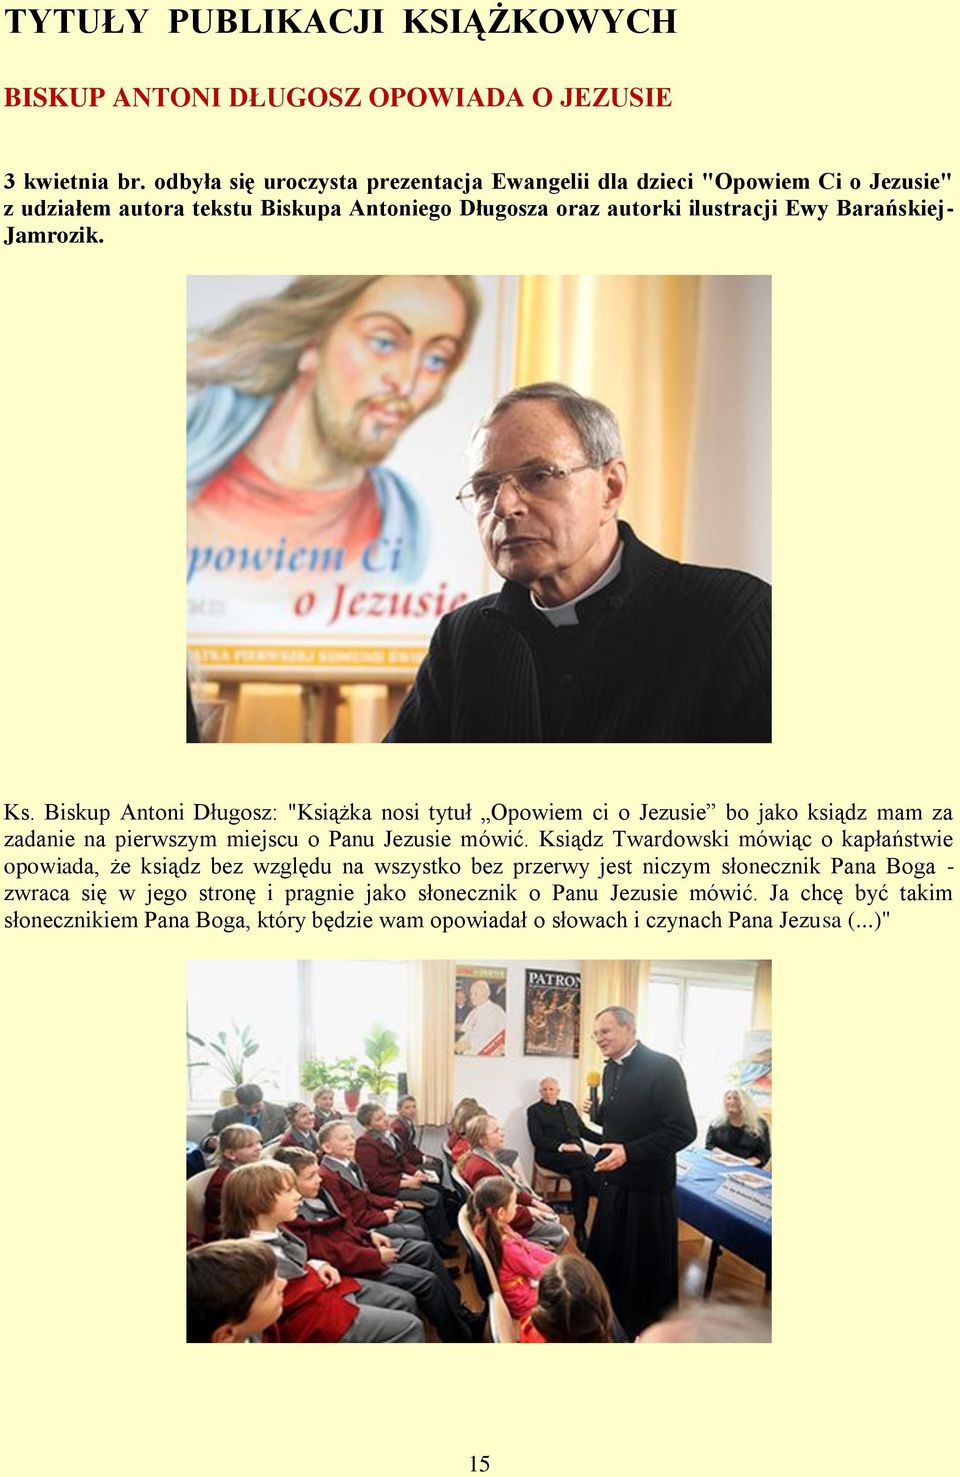 Ks. Biskup Antoni Długosz: "Książka nosi tytuł Opowiem ci o Jezusie bo jako ksiądz mam za zadanie na pierwszym miejscu o Panu Jezusie mówić.